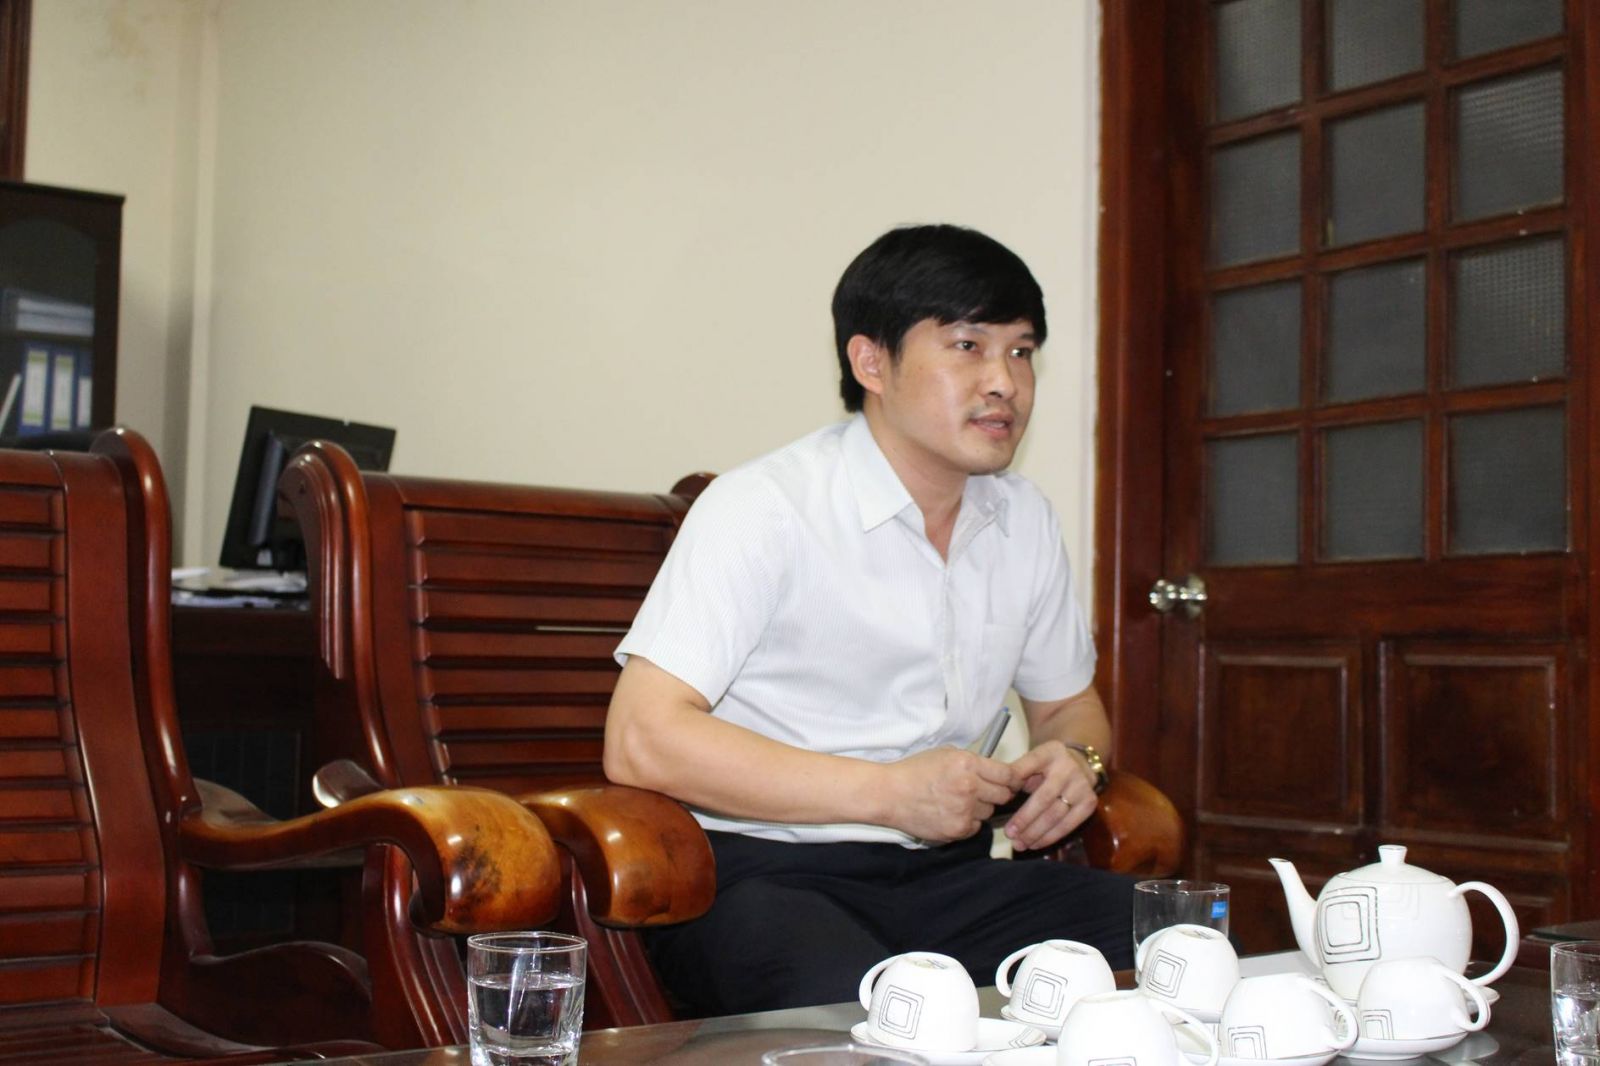 Ông Quách Cao Sơn, Phó Giám đốc sở Xây dựng tỉnh Hòa Bìnhp/xác nhận thông tin về các sai phạm tại một số dự án trên địa bàn huyện Lương Sơn. Ảnh: QĐ